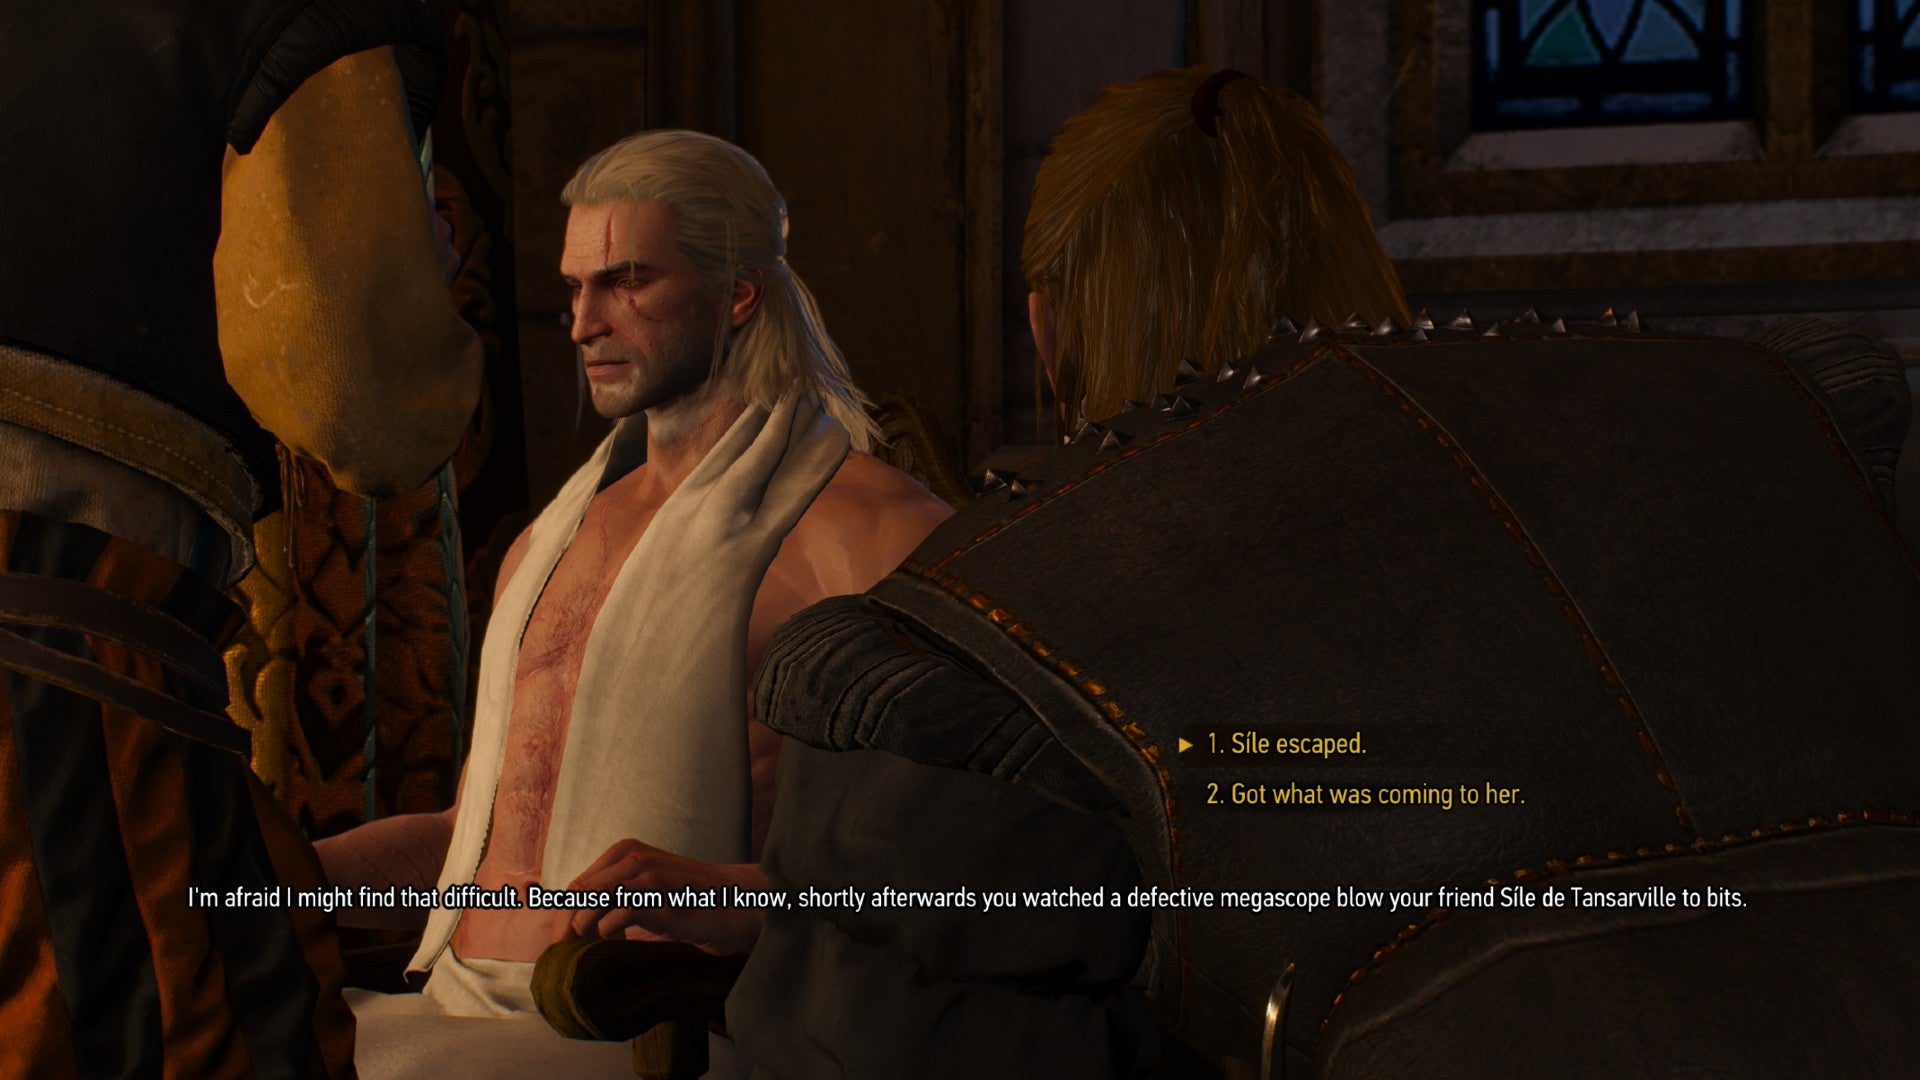 Captura de pantalla de Witcher 3 que muestra la cuarta opción de diálogo en la conversación simulada de Witcher 2.